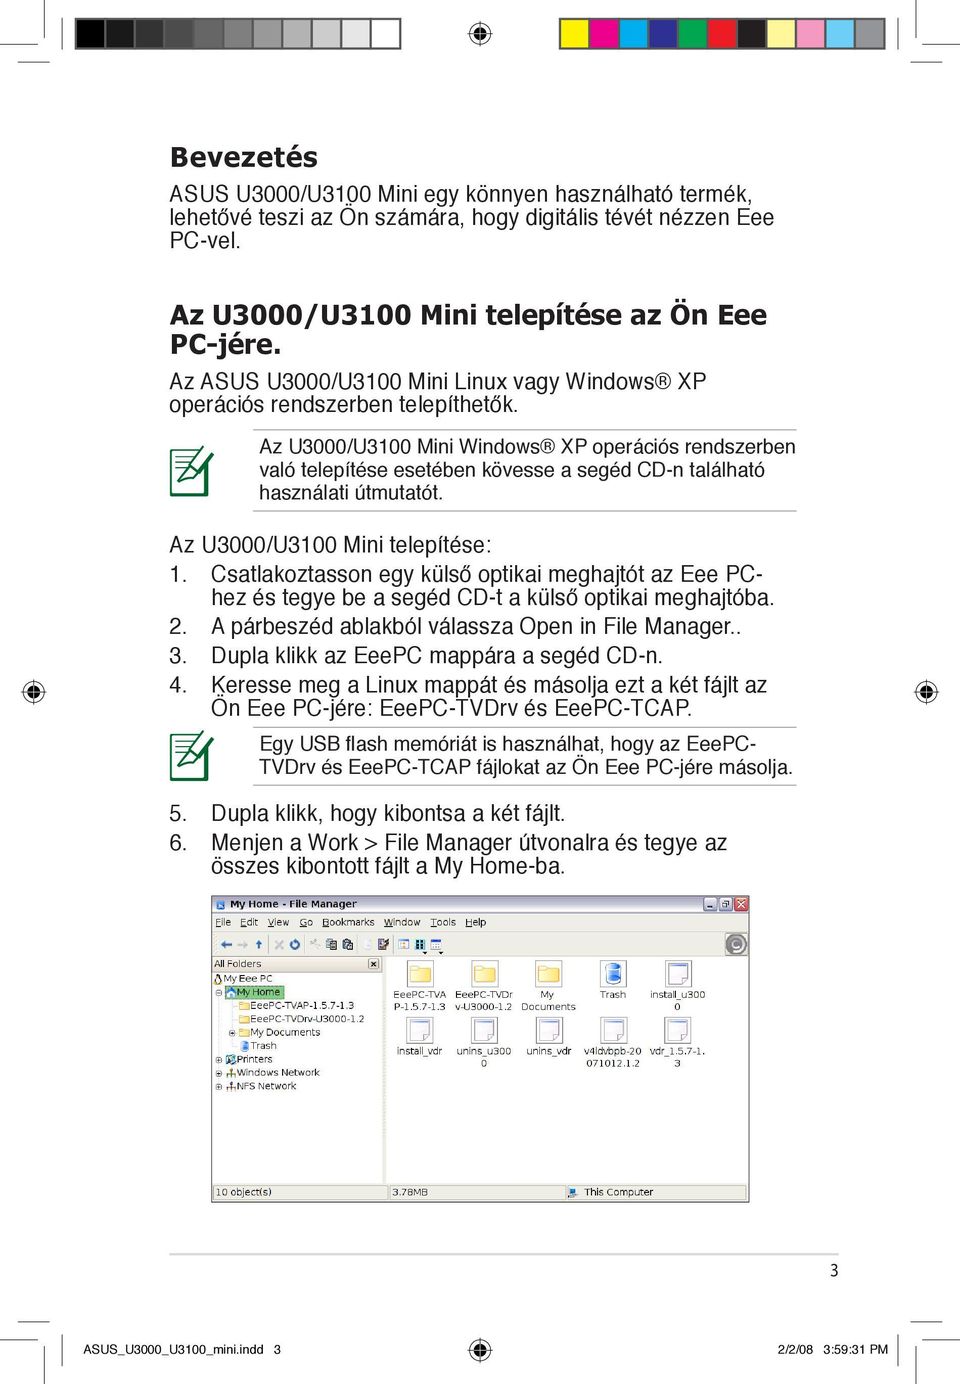 Az U3000/U3100 Mini Windows XP operációs rendszerben való telepítése esetében kövesse a segéd CD-n található használati útmutatót. Az U3000/U3100 Mini telepítése: 1.